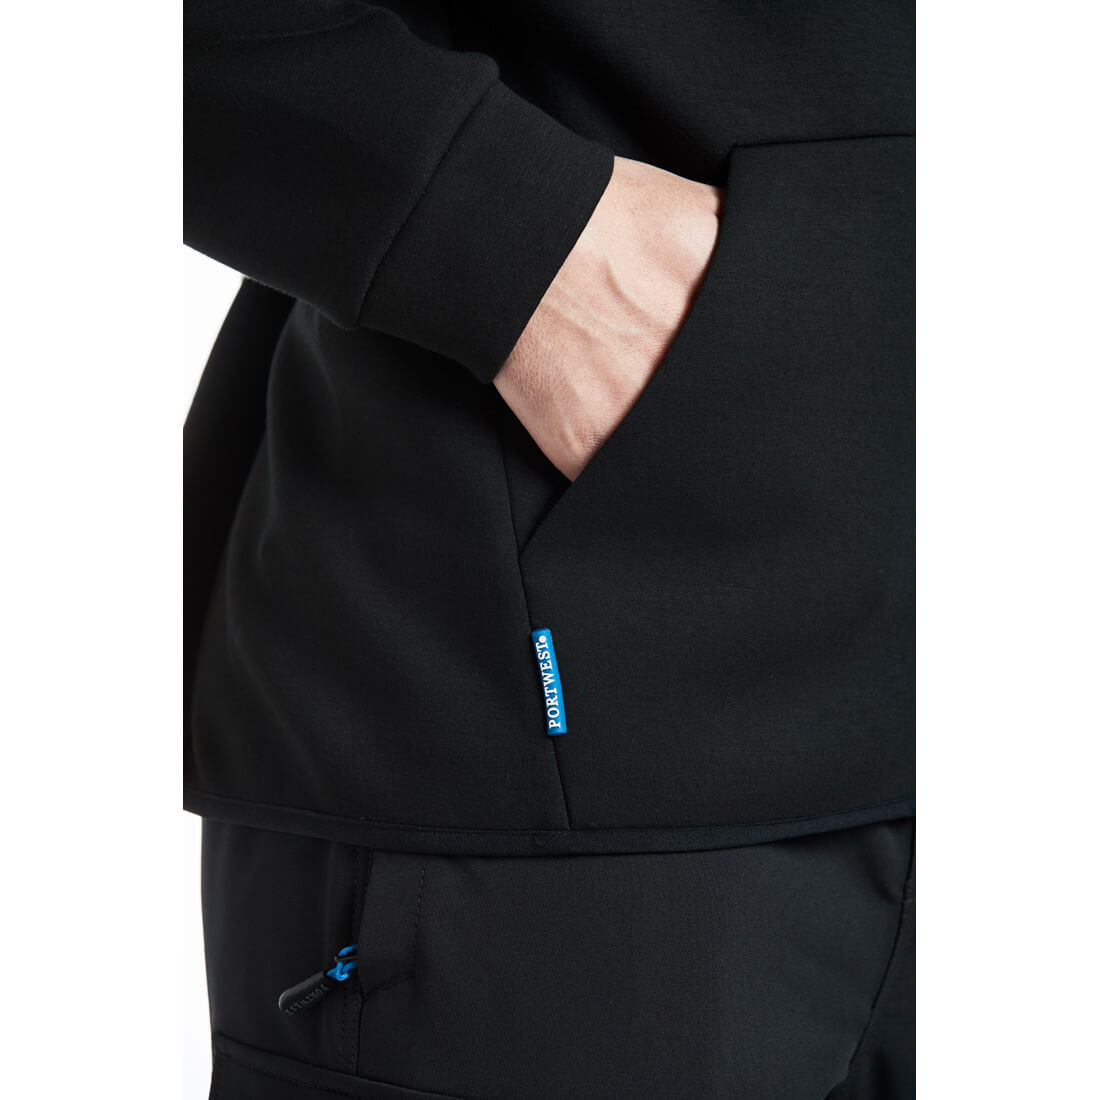 KX3 Neo Fleece Jacke - Arbeitskleidung